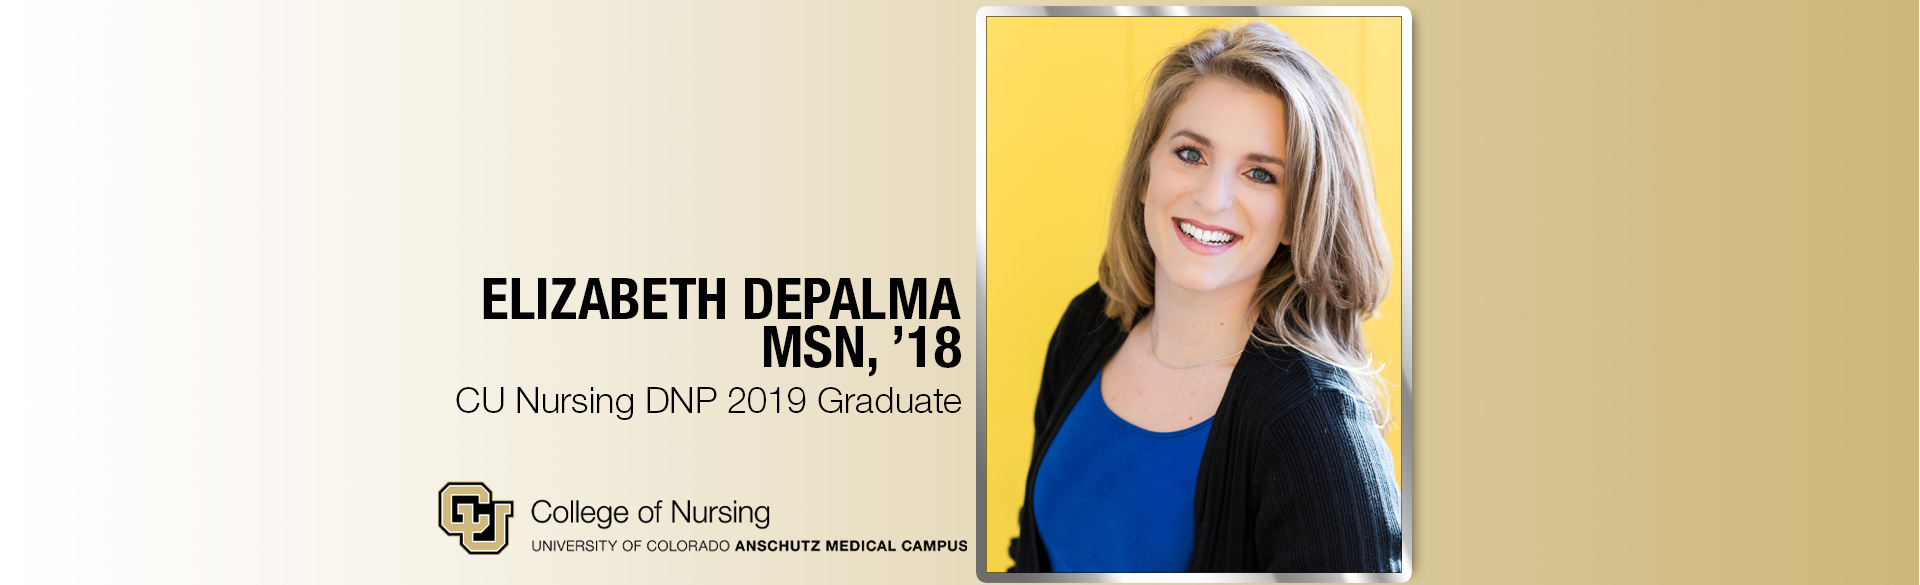  Elizabeth DePalma, (MSN, ’18), DNP 2019 CU Nursing graduate